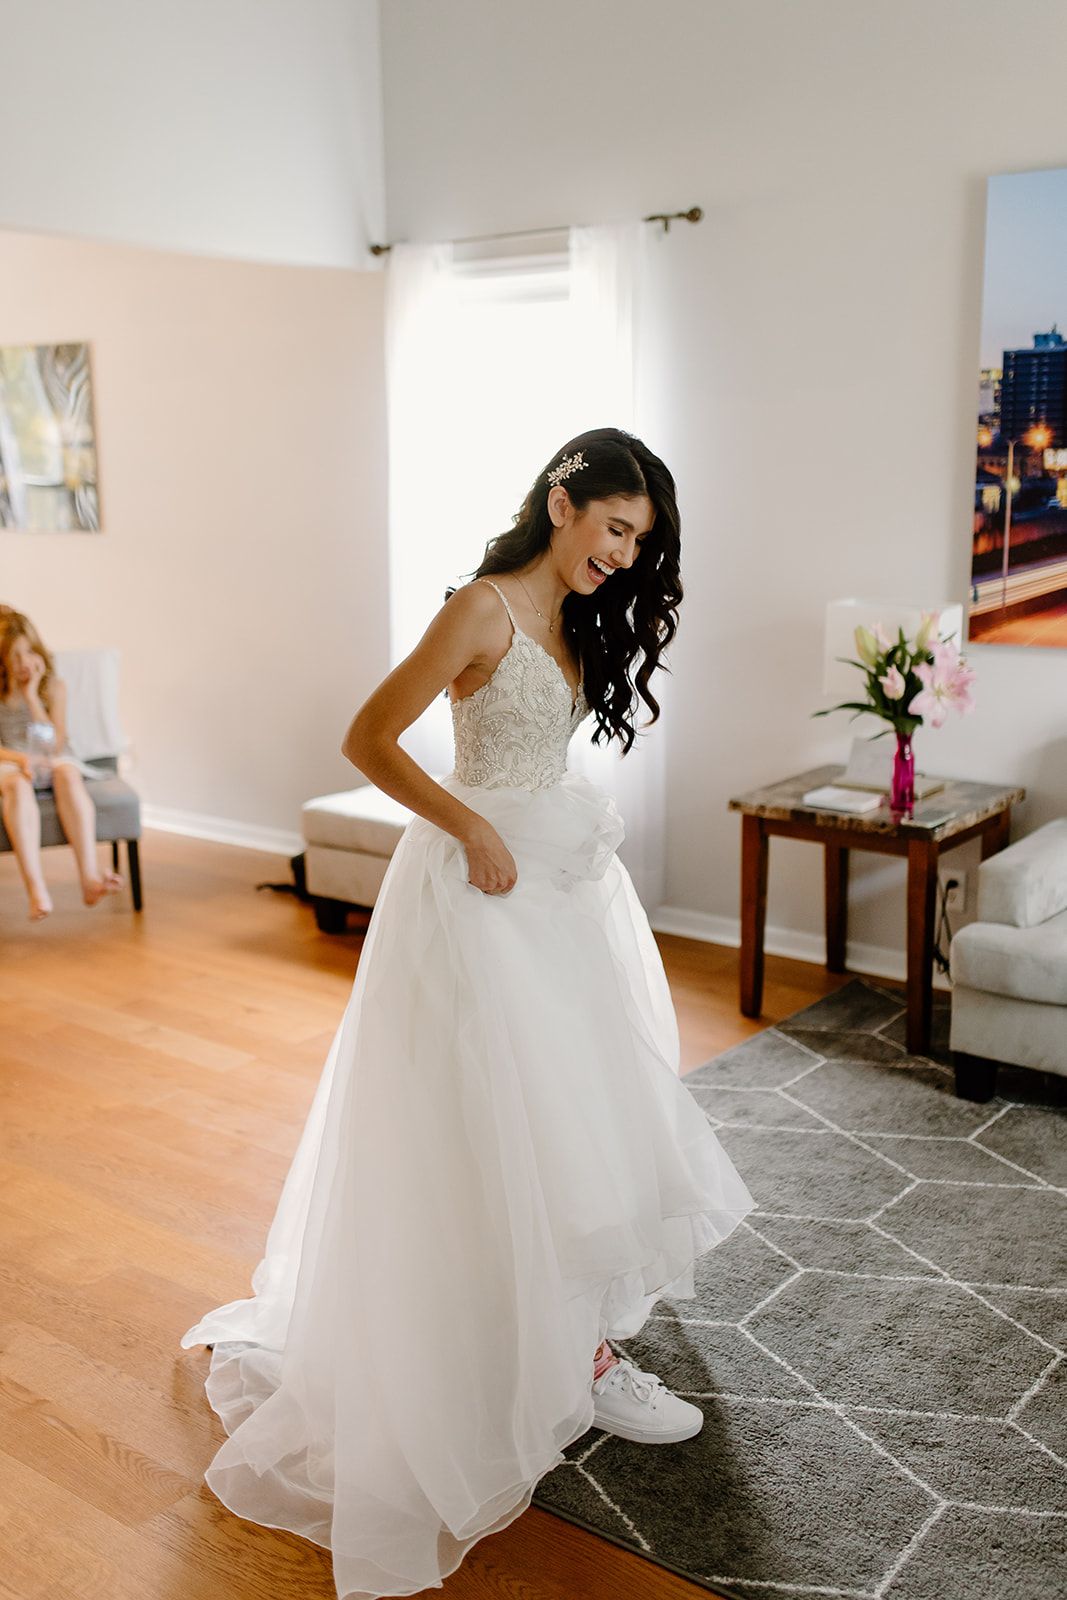 Bride smiles in her wedding dress